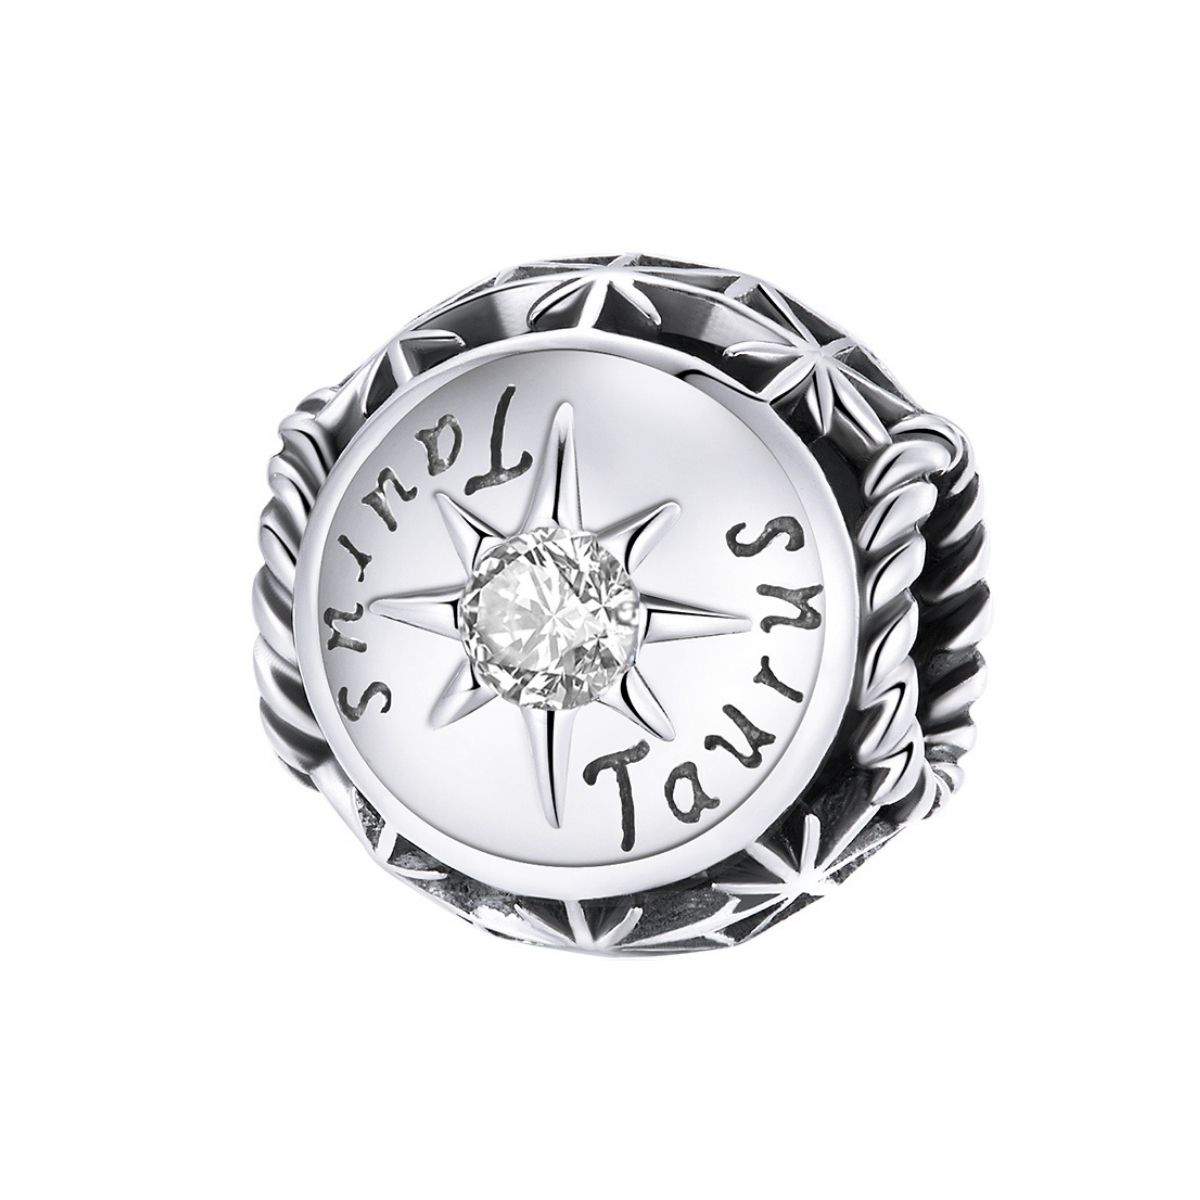 Sterrenbeeld stier bedel met kristal zirkonia geboortesteen  zodiac taurus bead  Zilverana  geschikt voor Biagi , Pandora , Trollbeads armband  925 zilver